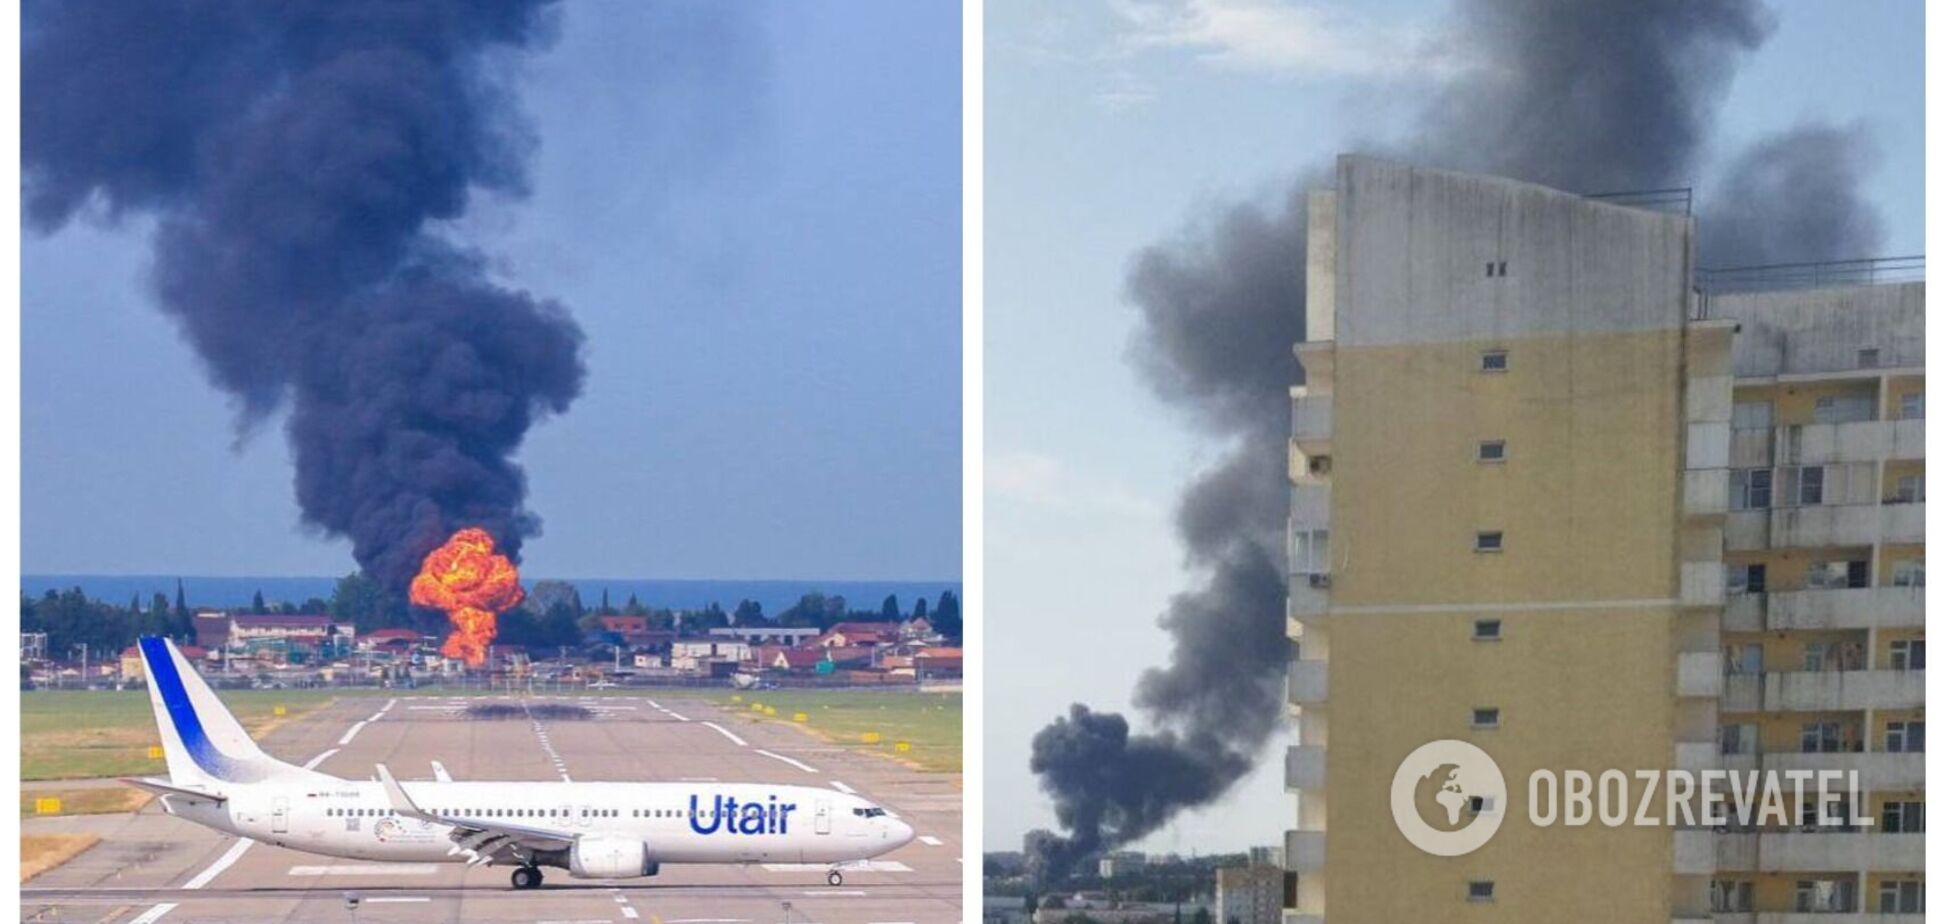 Поблизу аеропорту в Сочі сталася потужна пожежа, піднявся стовп чорного диму. Відео